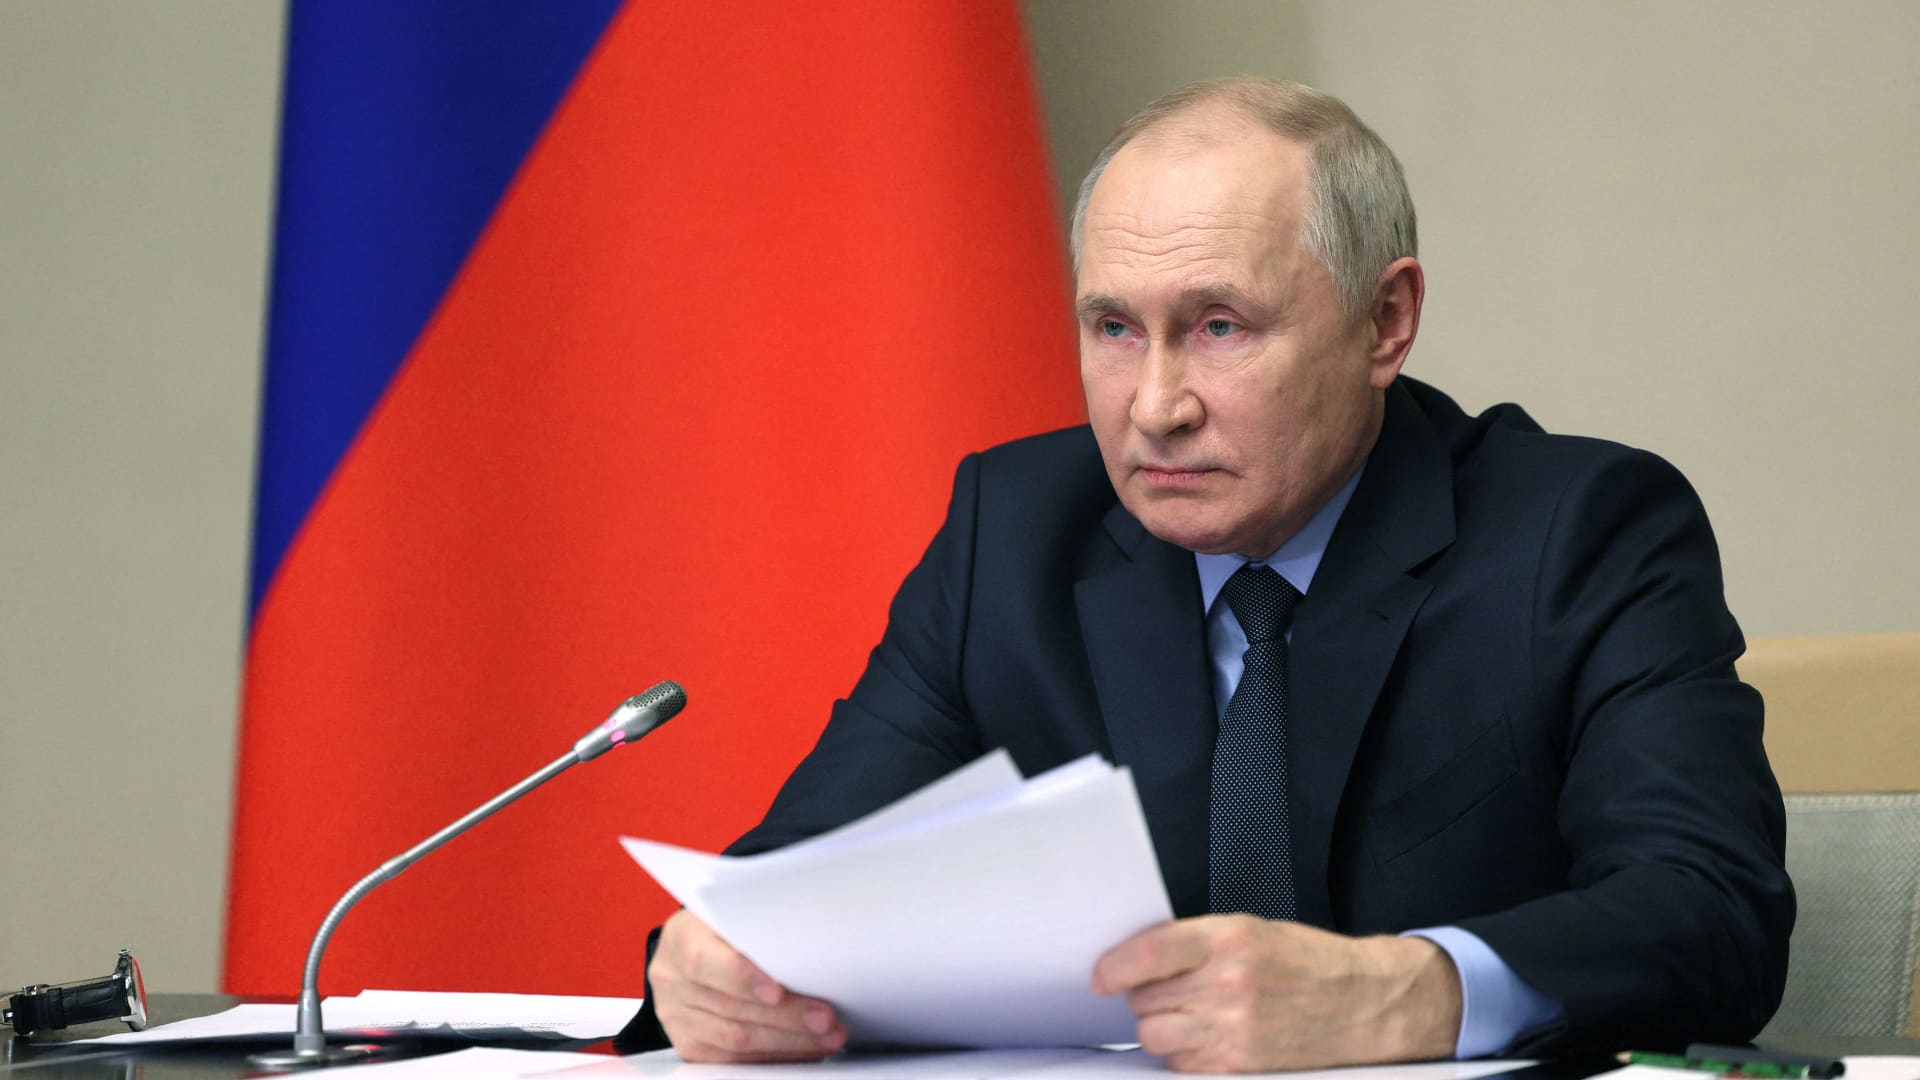 30 жовтня 2023 року в Москві президент Росії Володимир Путін проводить нараду з членами Ради безпеки, уряду РФ і правоохоронними органами.